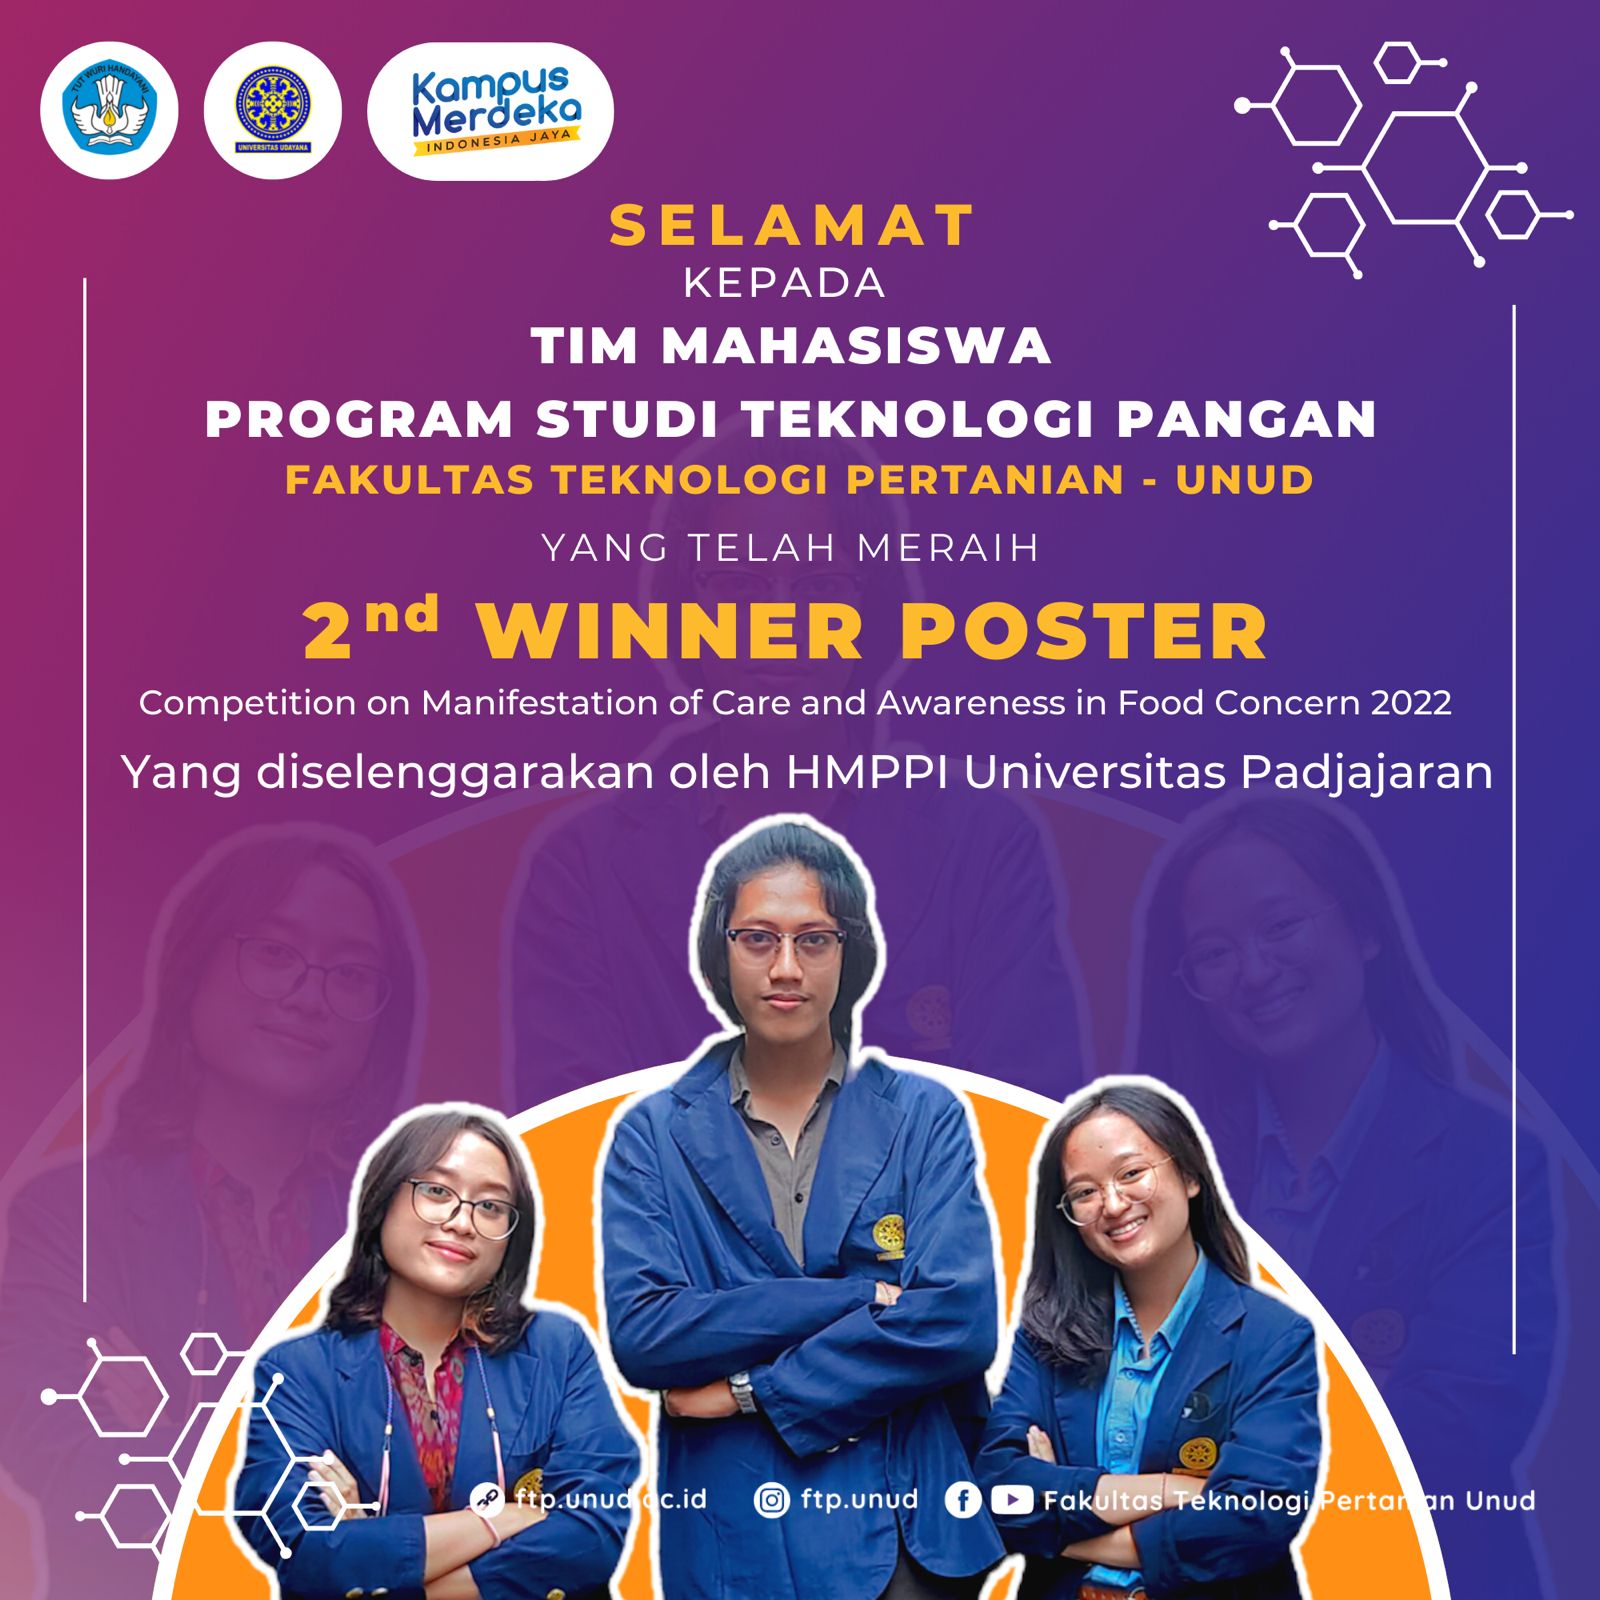 BANGGA! 3 Mahasiswa Program Studi Teknologi Pangan Raih Juara 2 Lomba Poster dalam Ajang Nasional “Macaron”